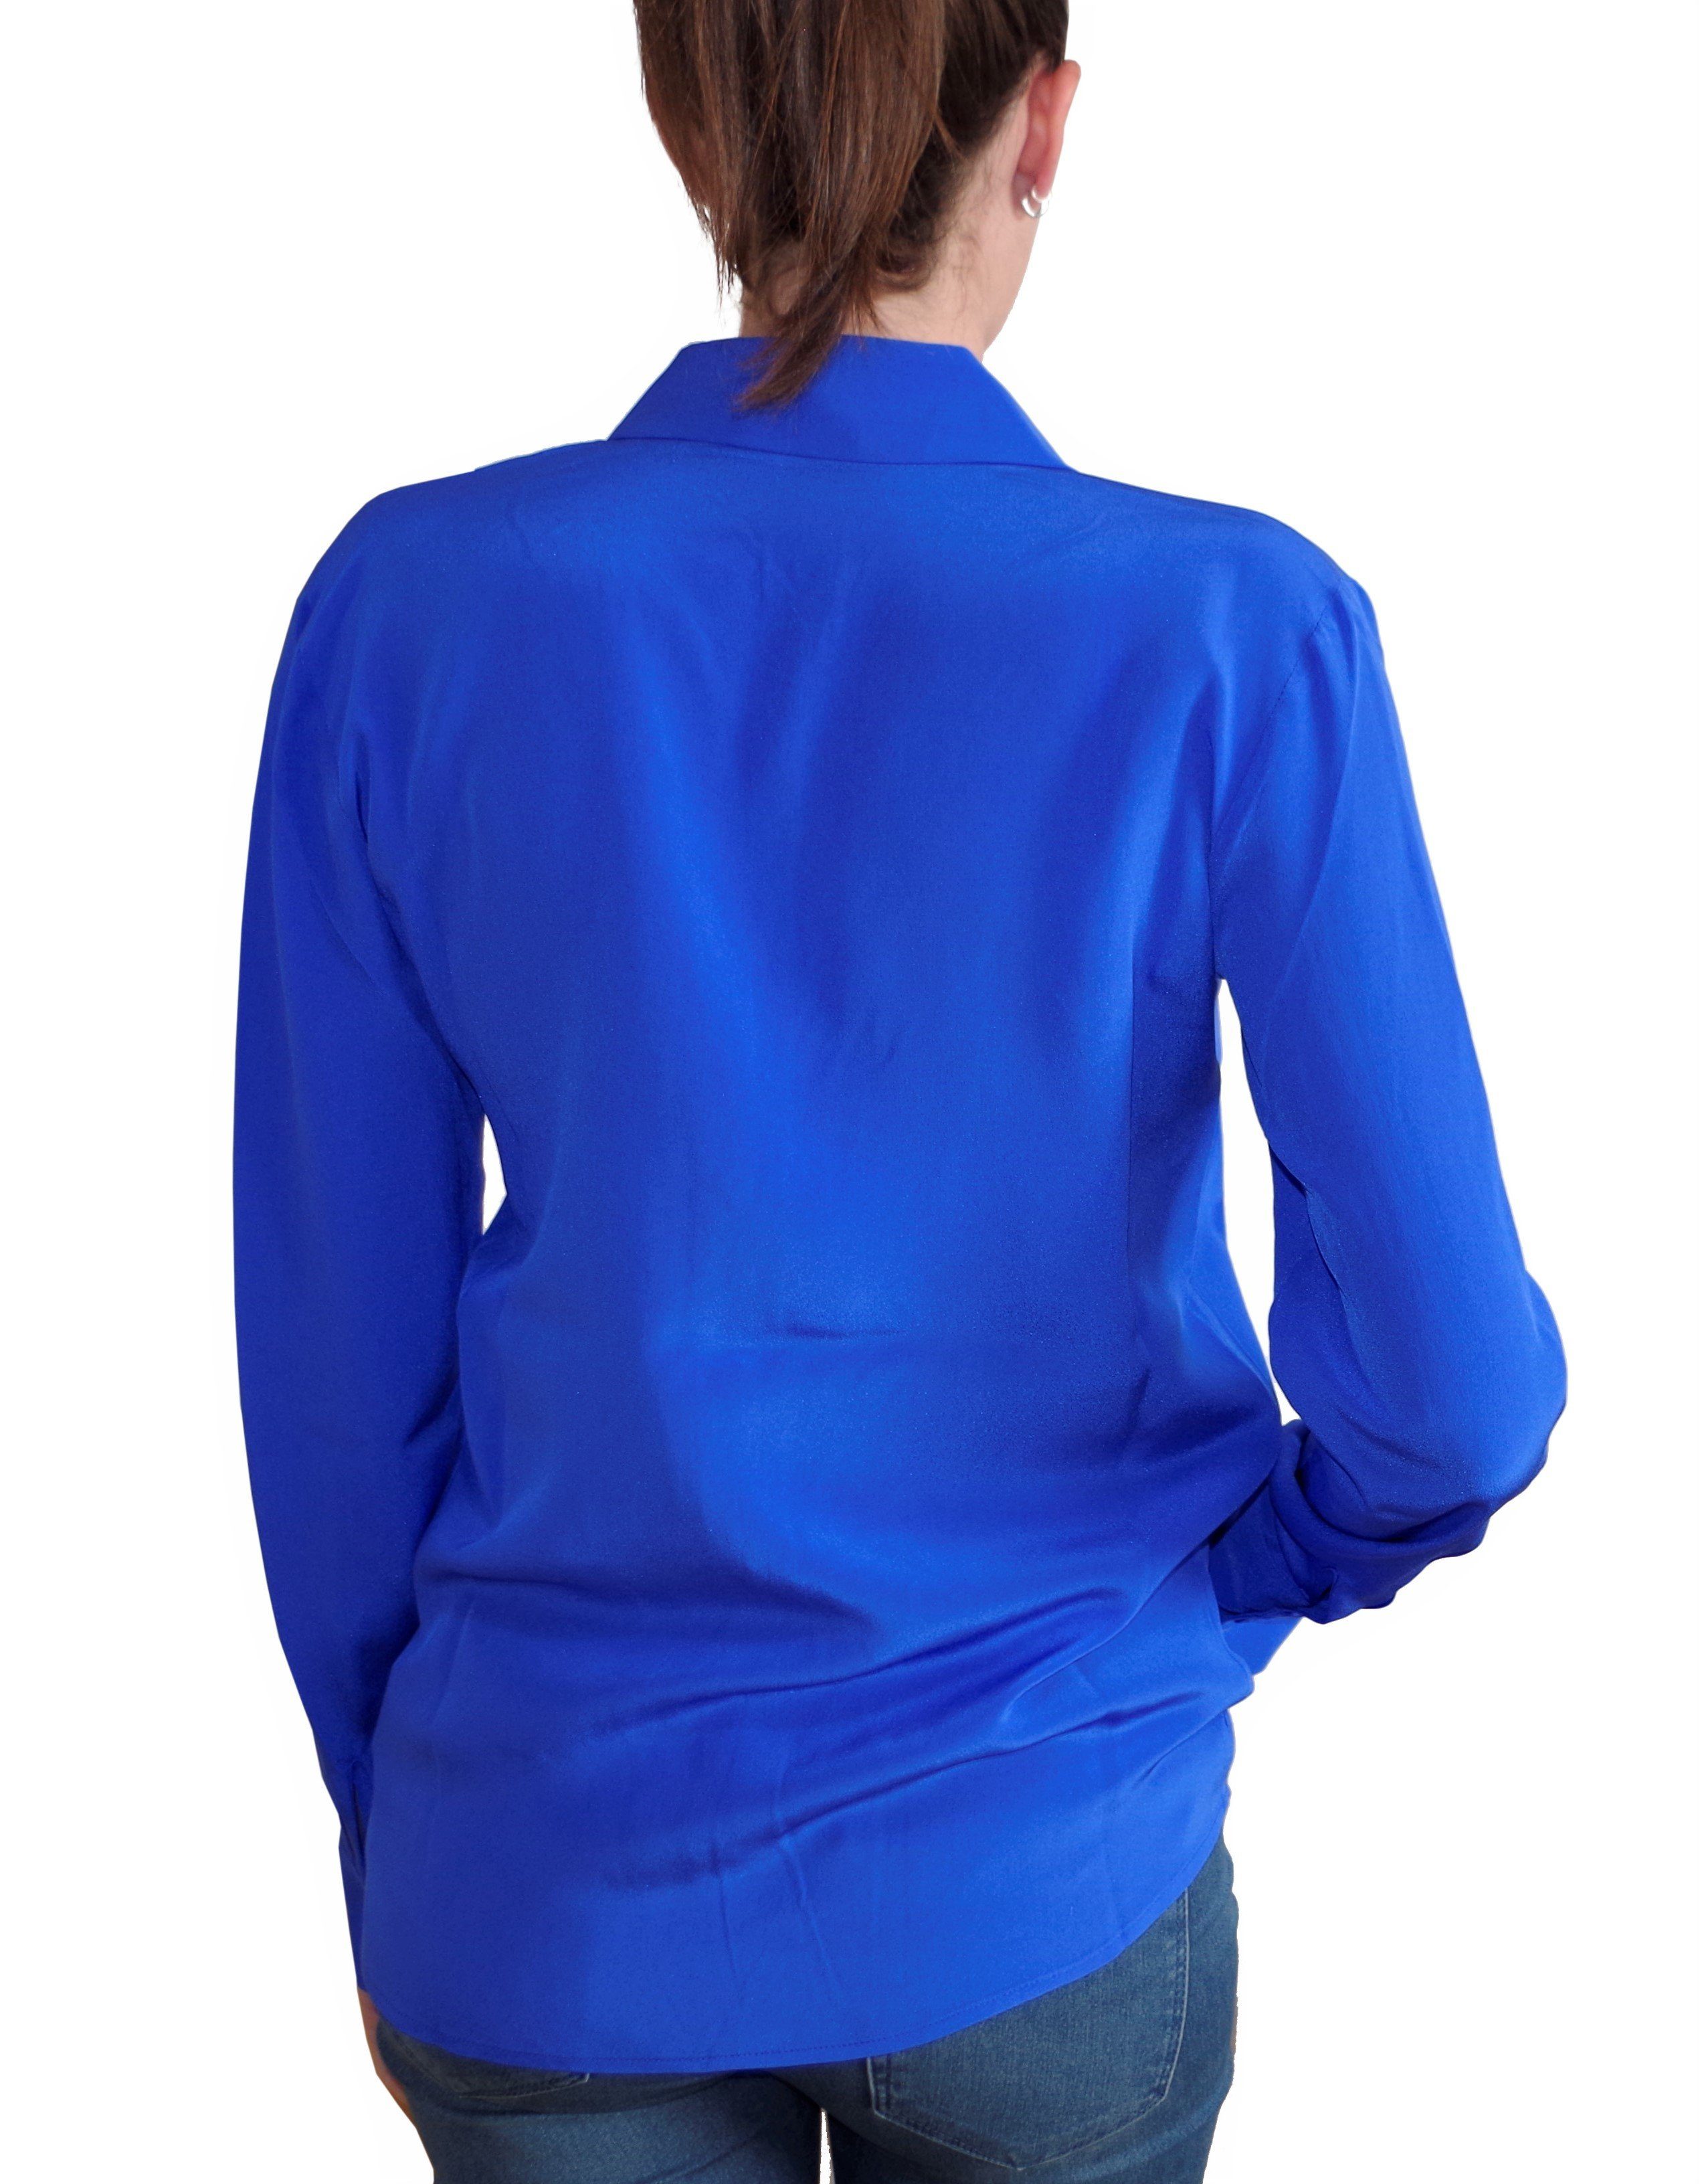 Gear Seidenbluse Posh Seide Bluse Collettoseta Seide 100% aus 100% Damen blau Seidenbluse dunkel